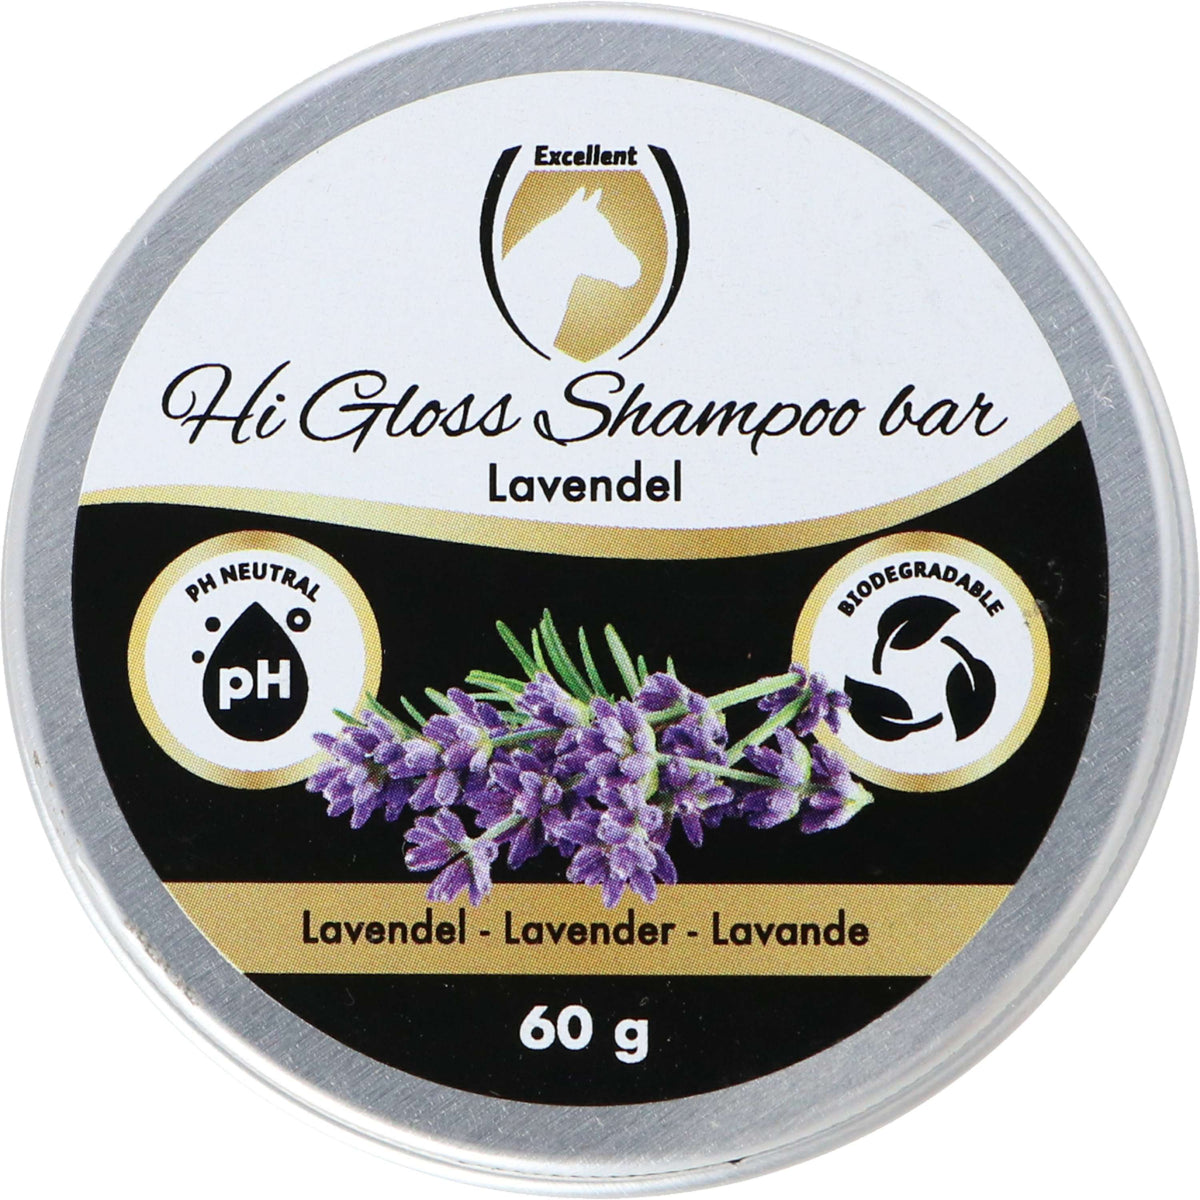 Excellent Shampoo Block Hi Gloss Lavendel